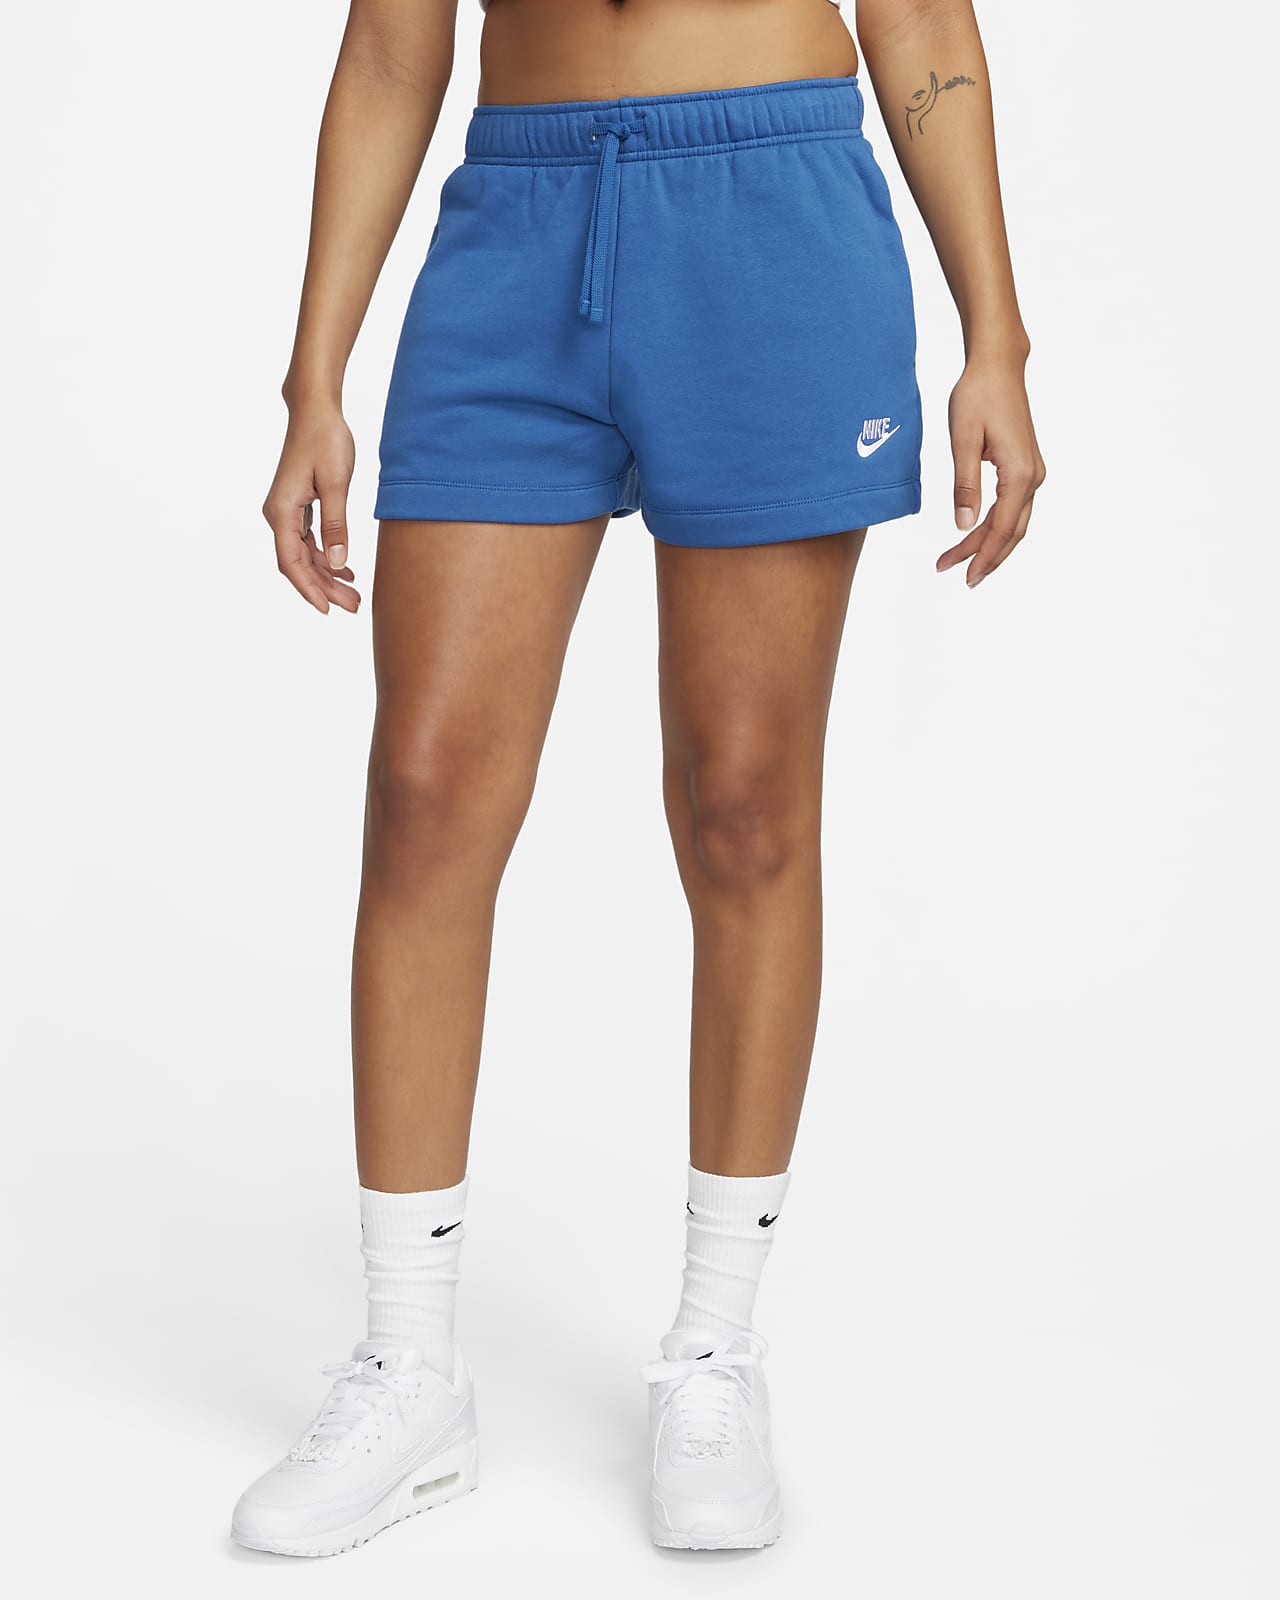 Jogging sportswear club écru femme - Nike